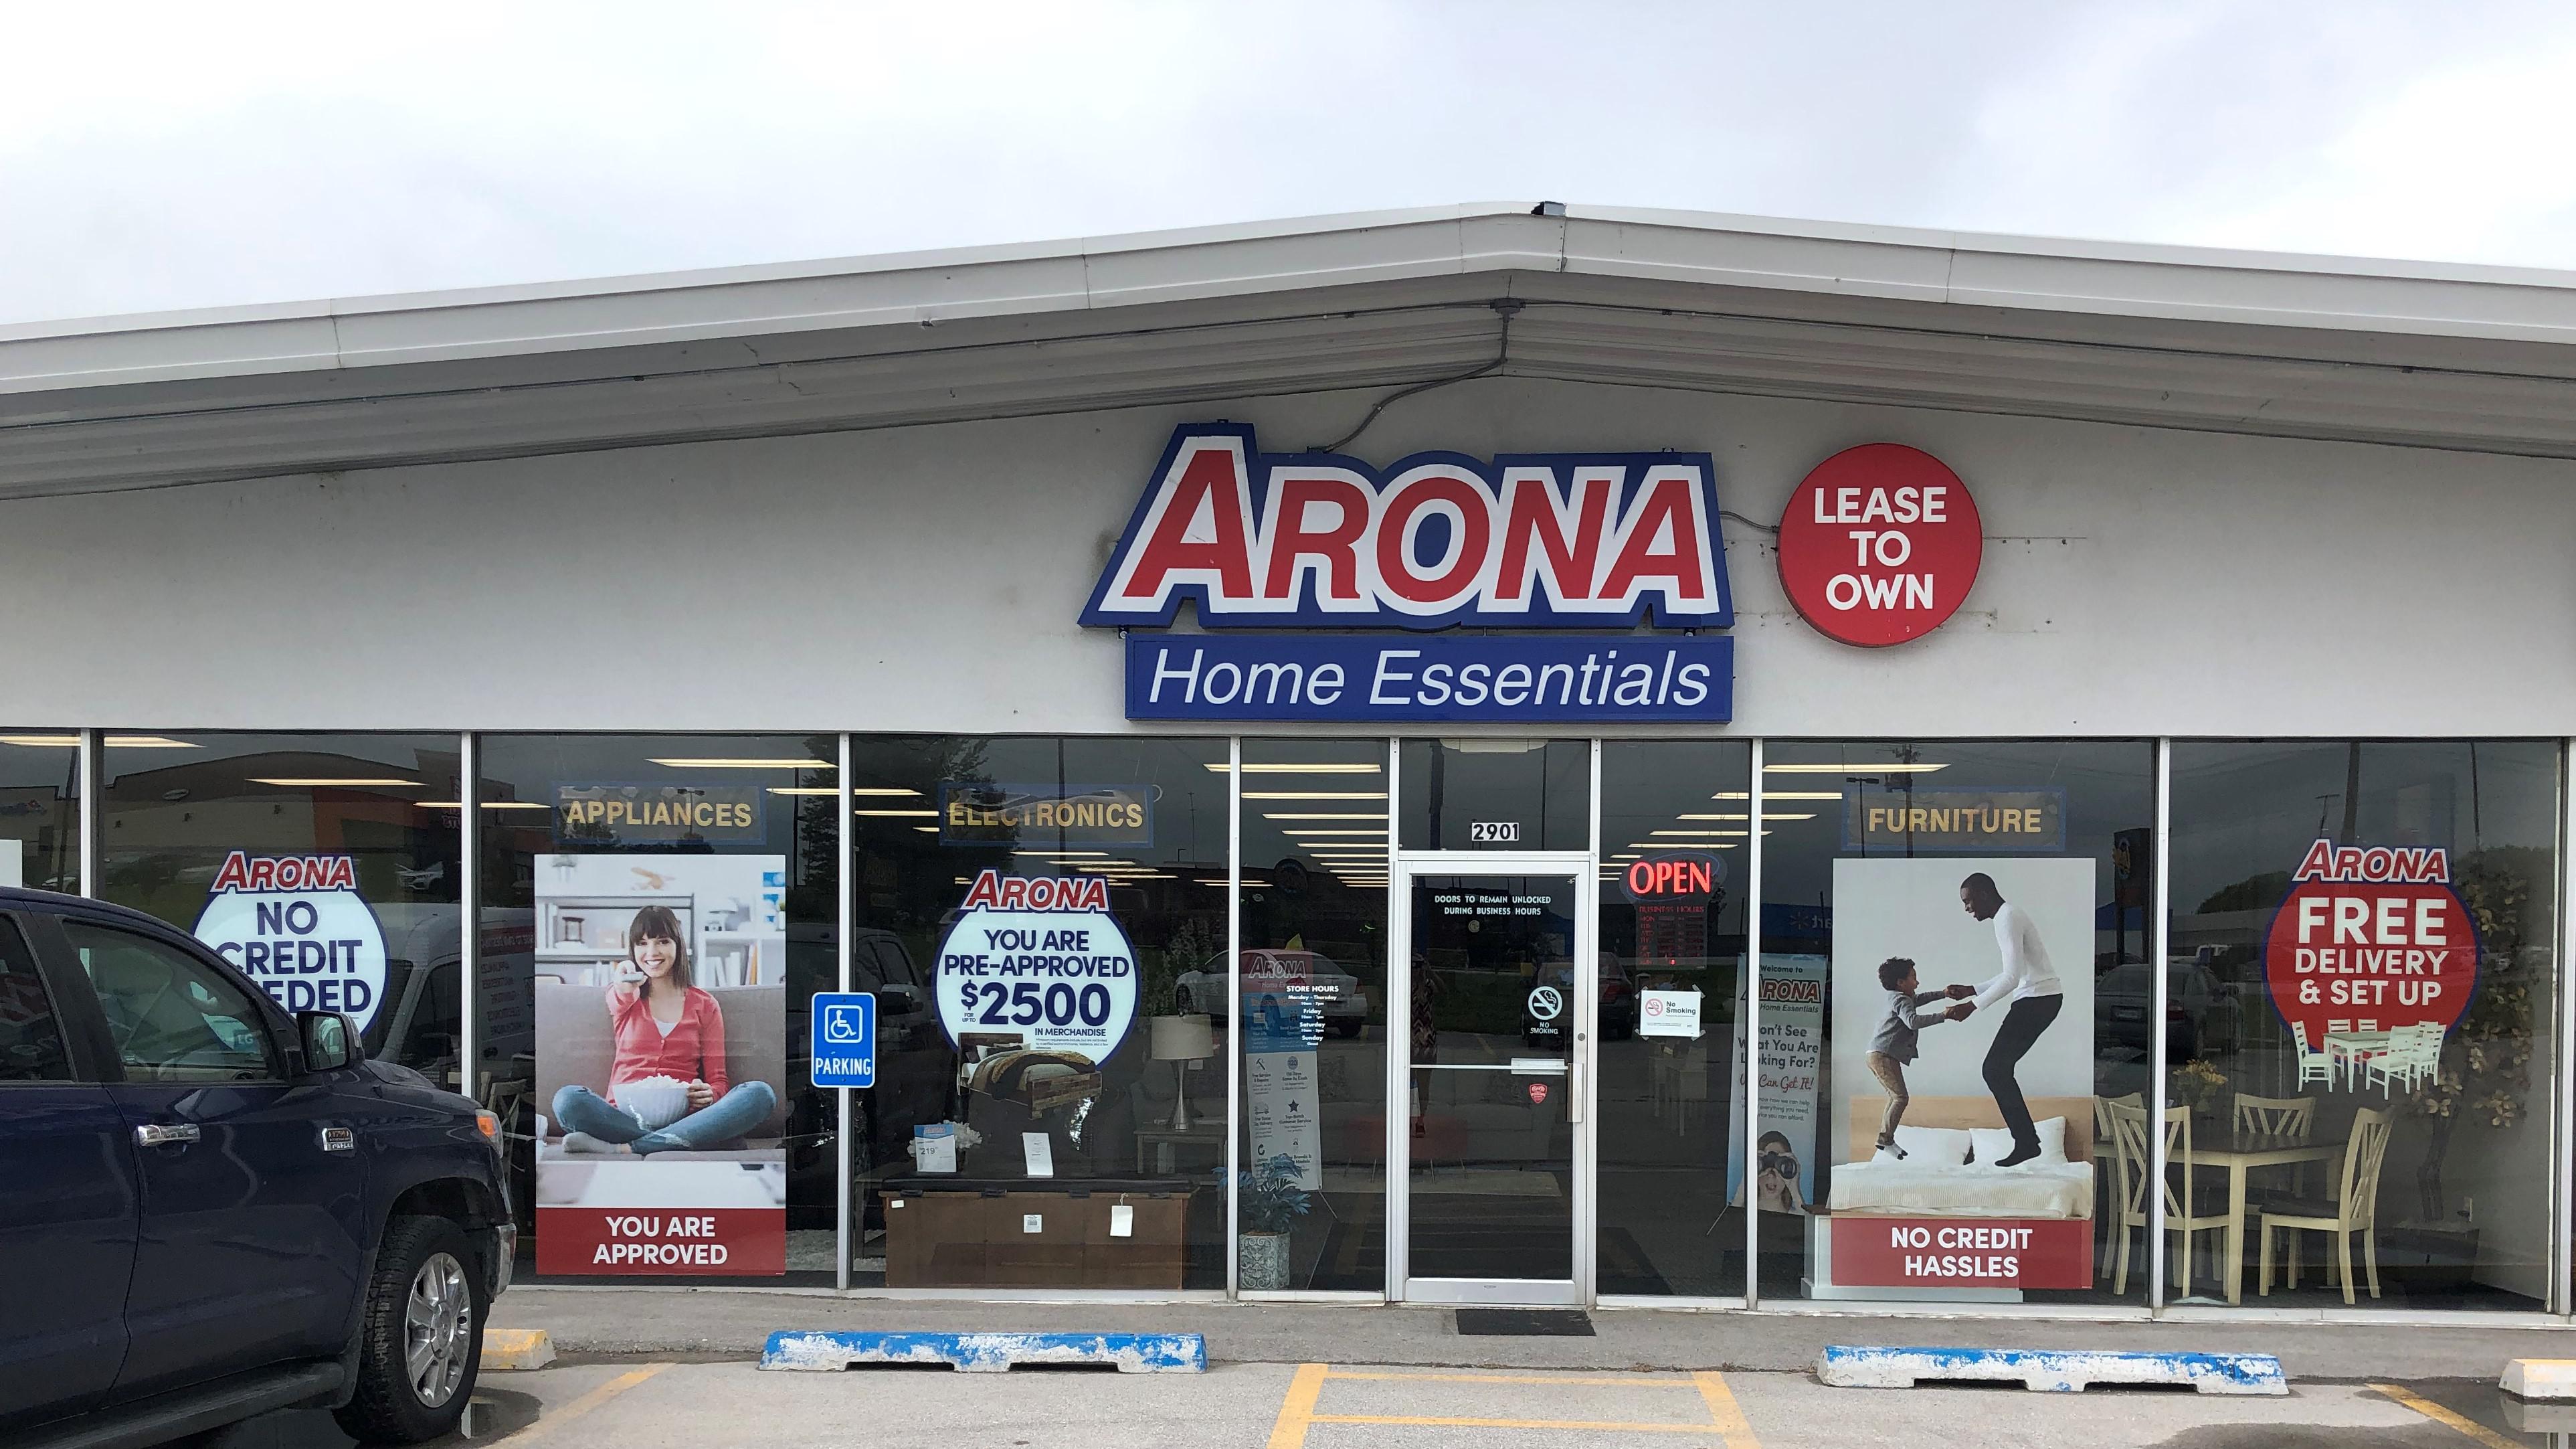 Arona Home Essentials